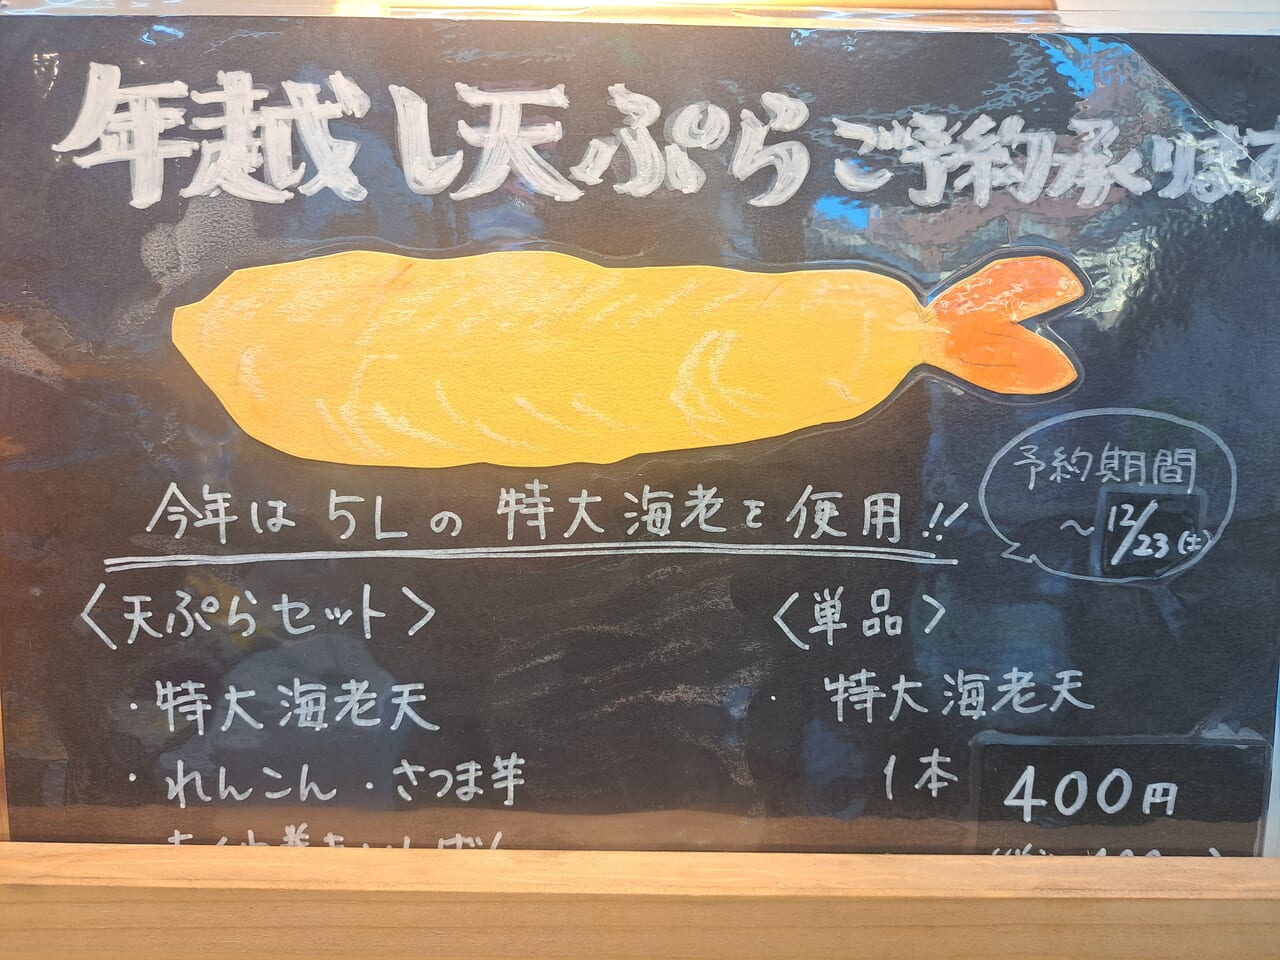 渡邉八百屋惣菜店